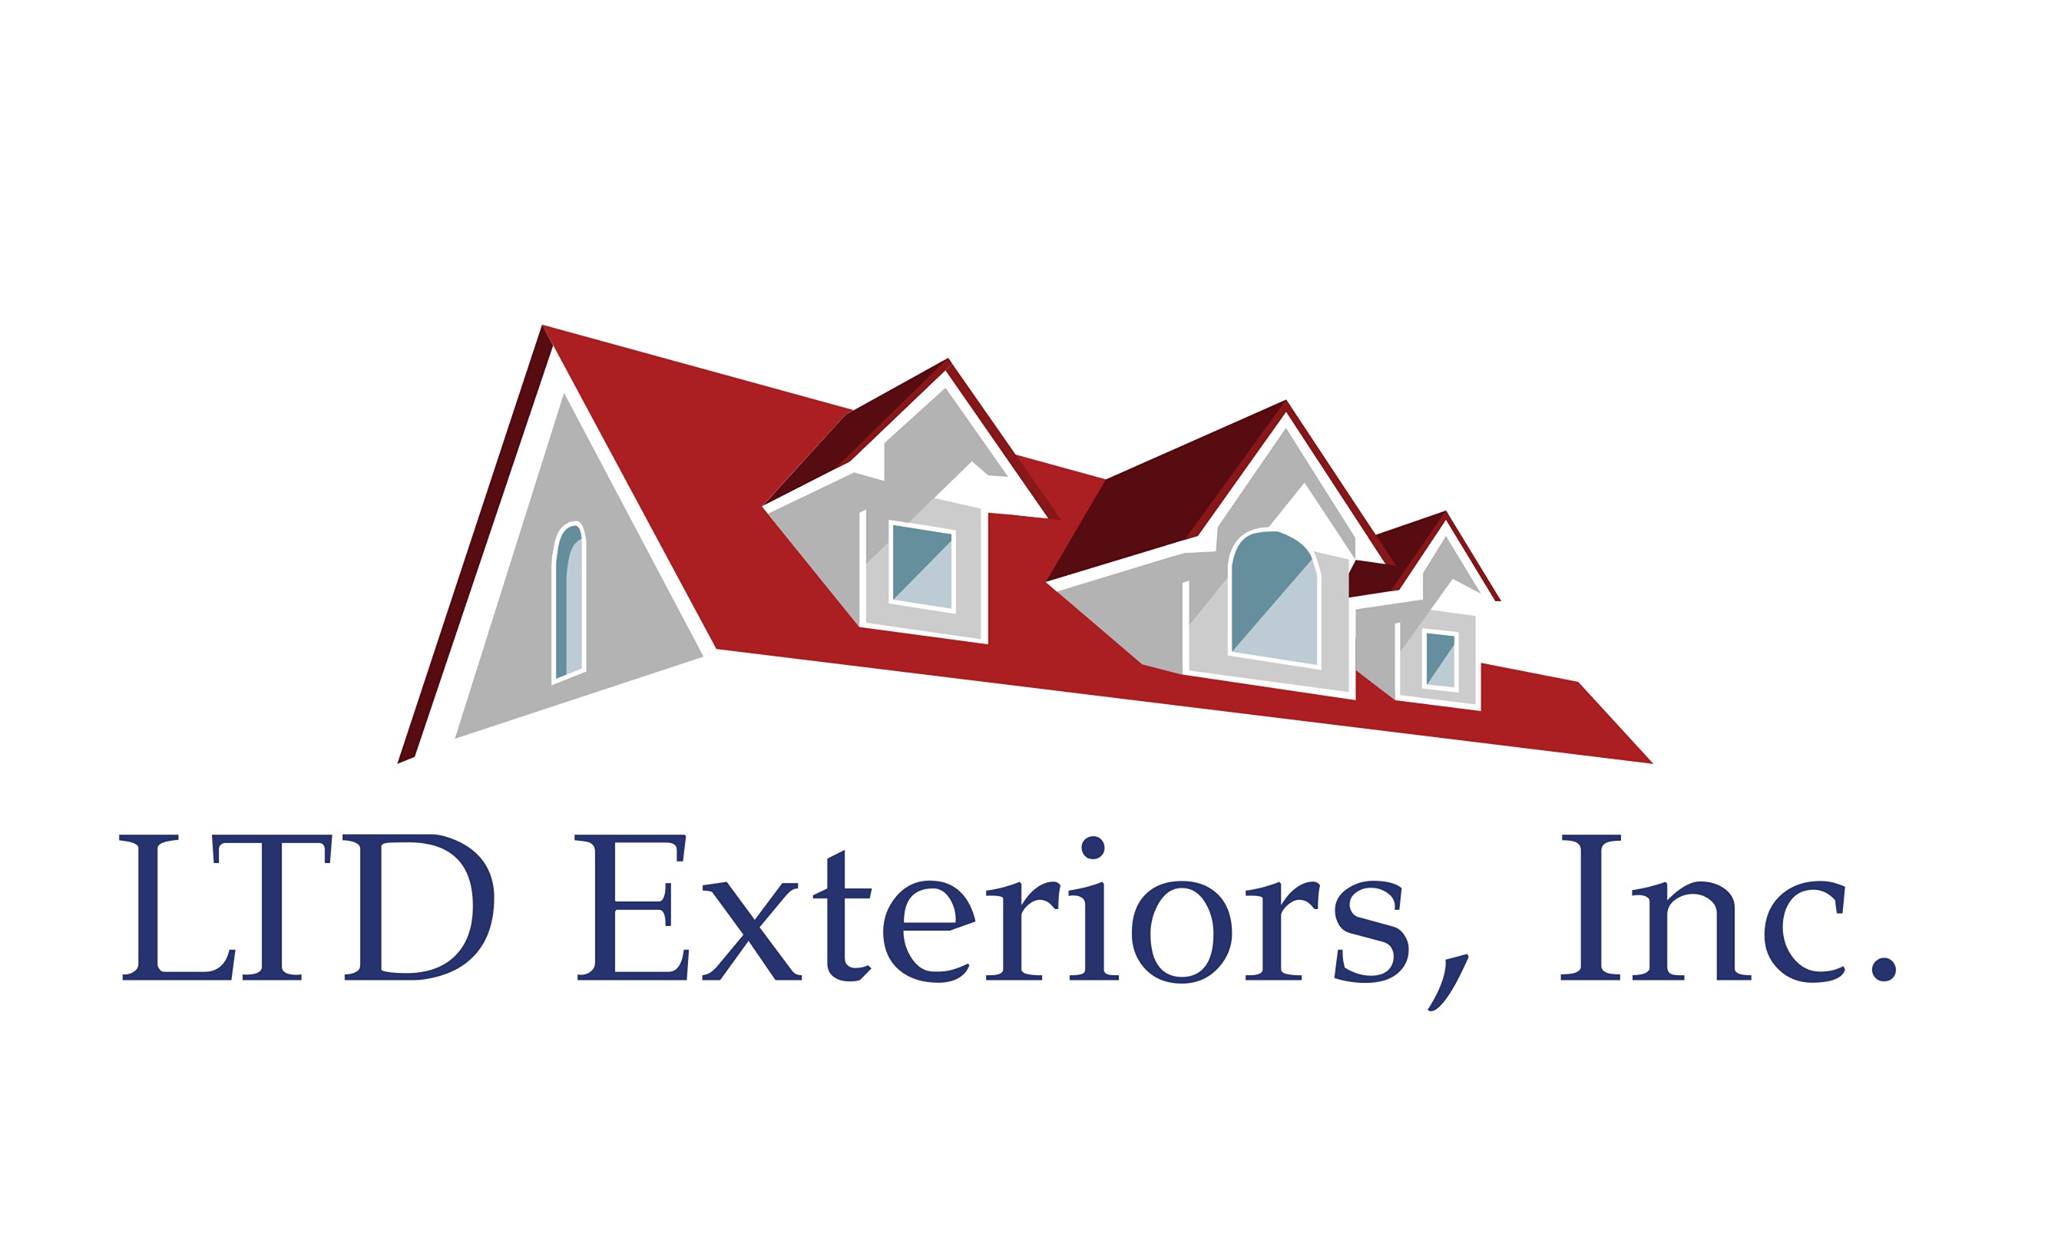 LTD Exteriors, Inc